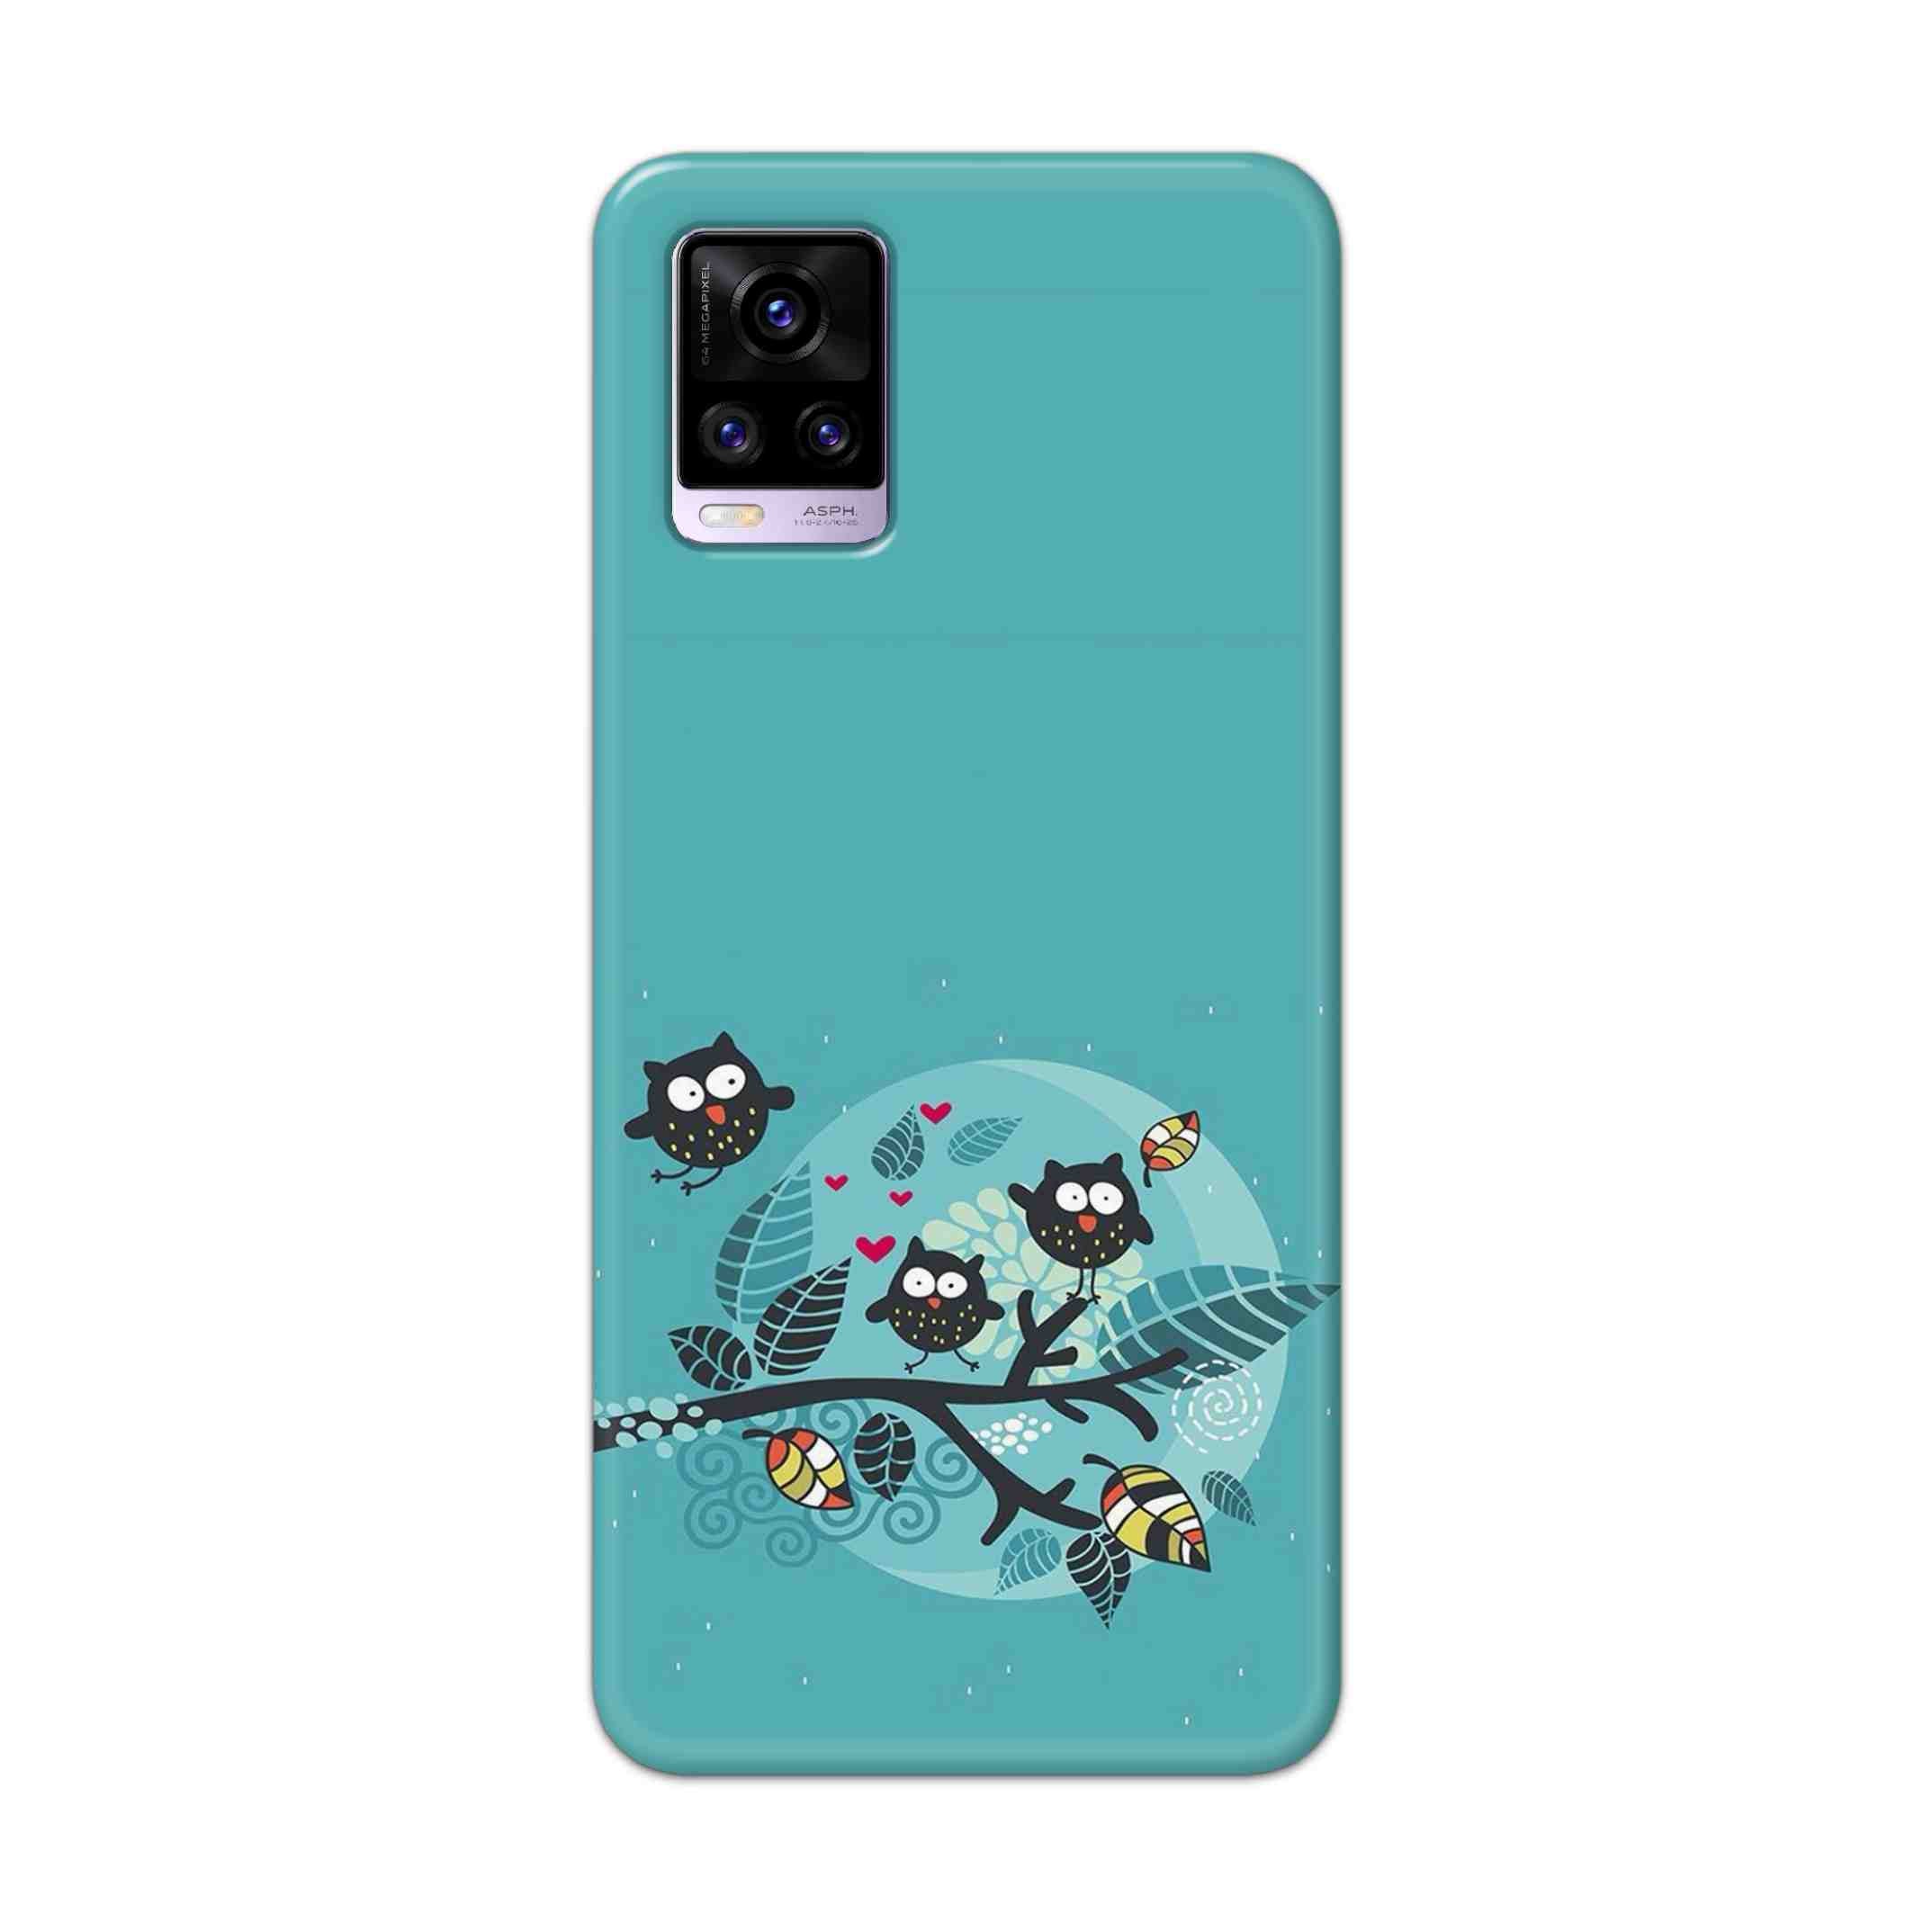 Buy Owl Hard Back Mobile Phone Case Cover For Vivo V20 Online